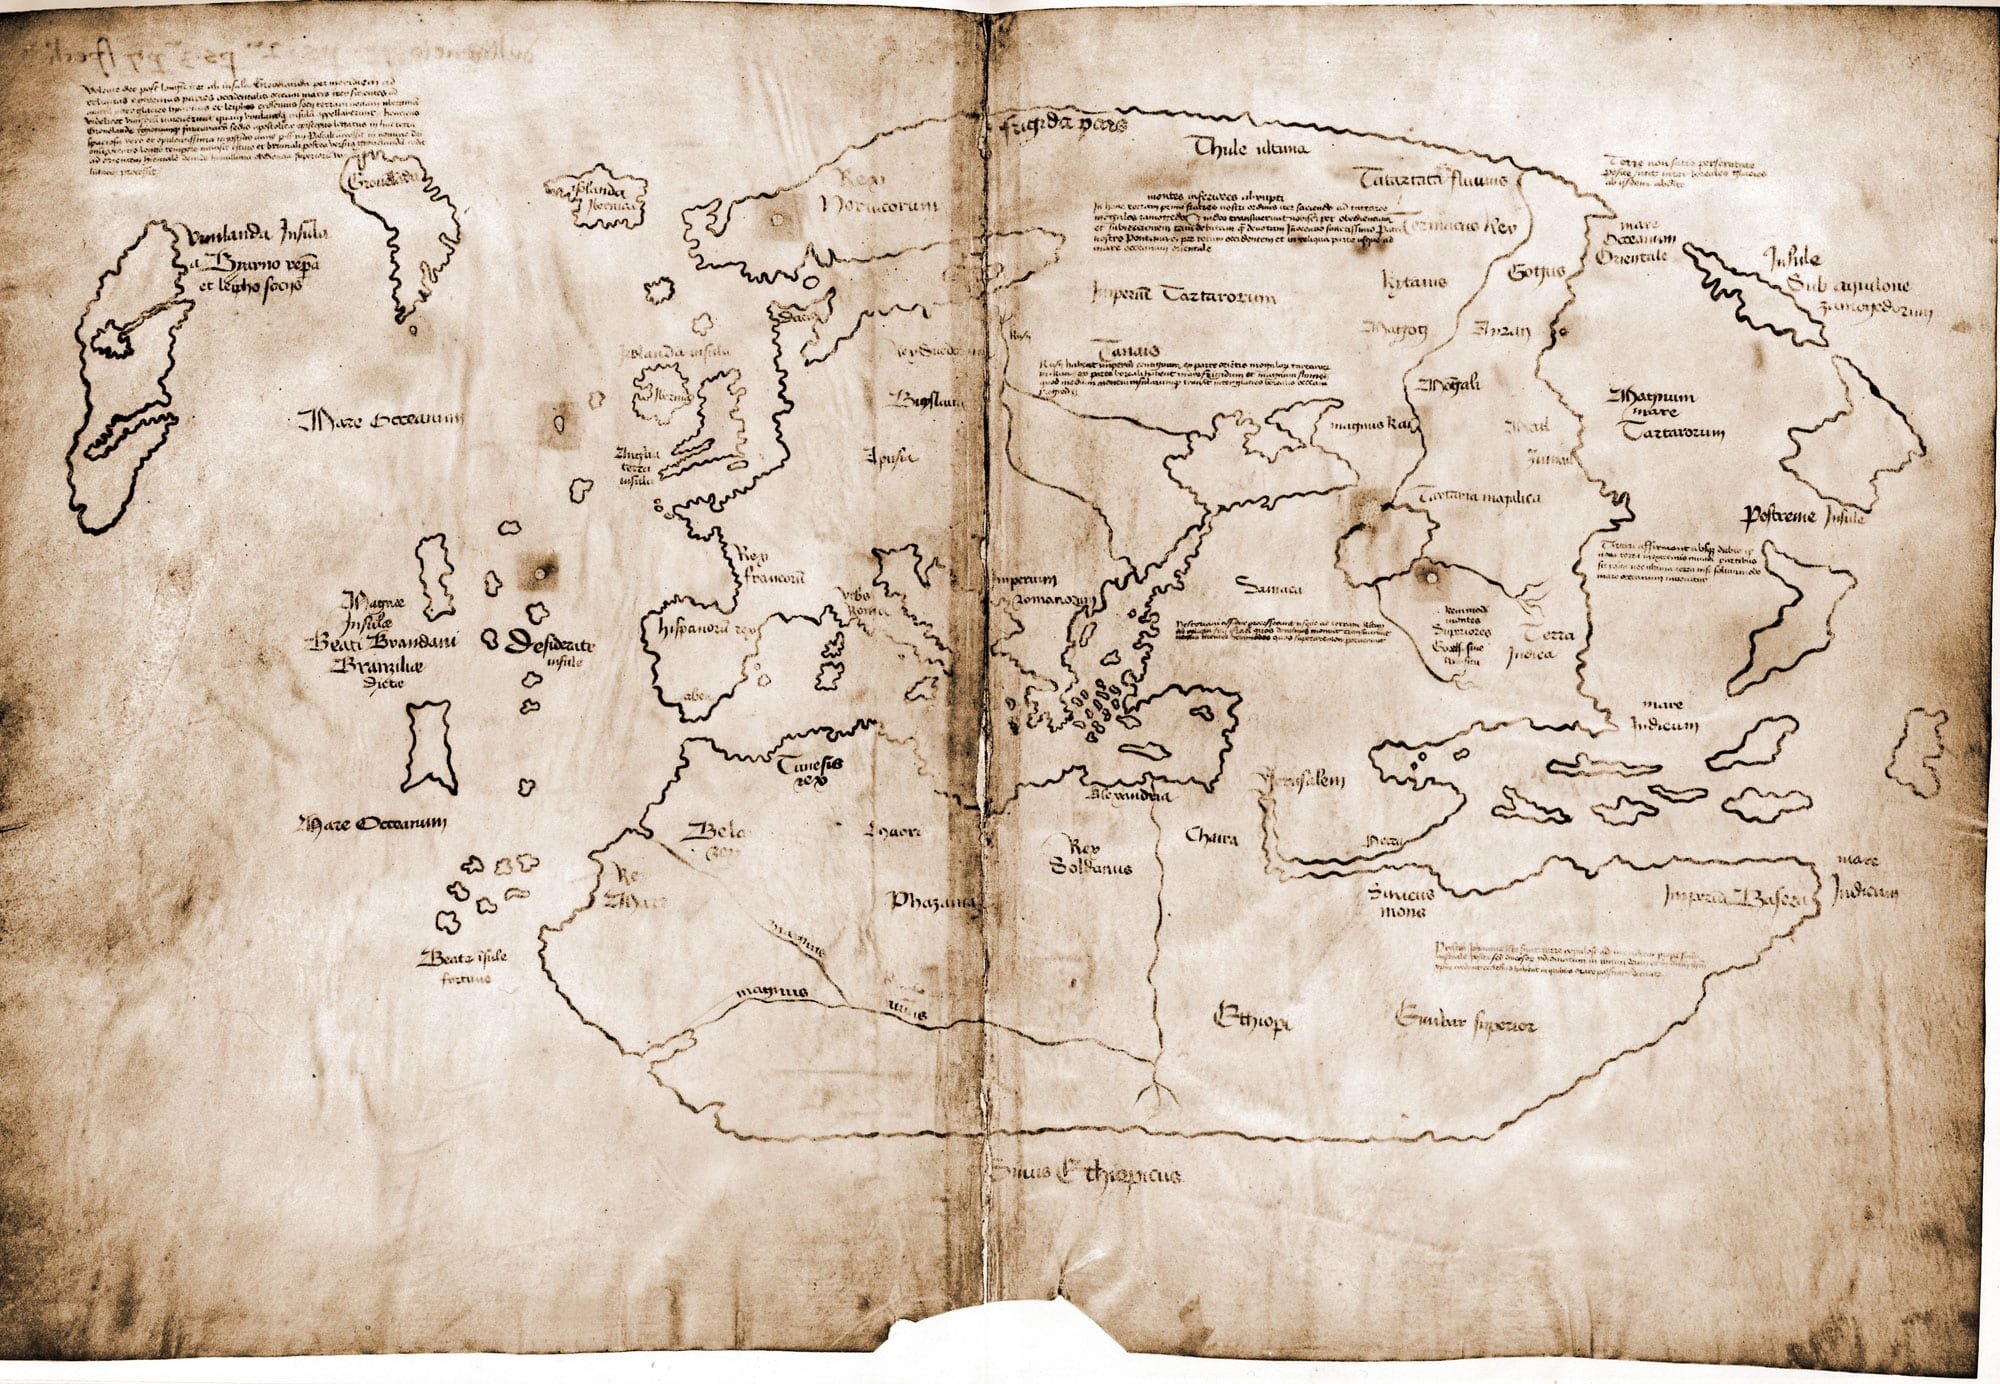 ¿ANTERIOR A COLÓN? El mapa de Vinlandia, con parte de la costa atlántica norteamericana en su extremo izquierdo. Foto: Universidad de Yale.